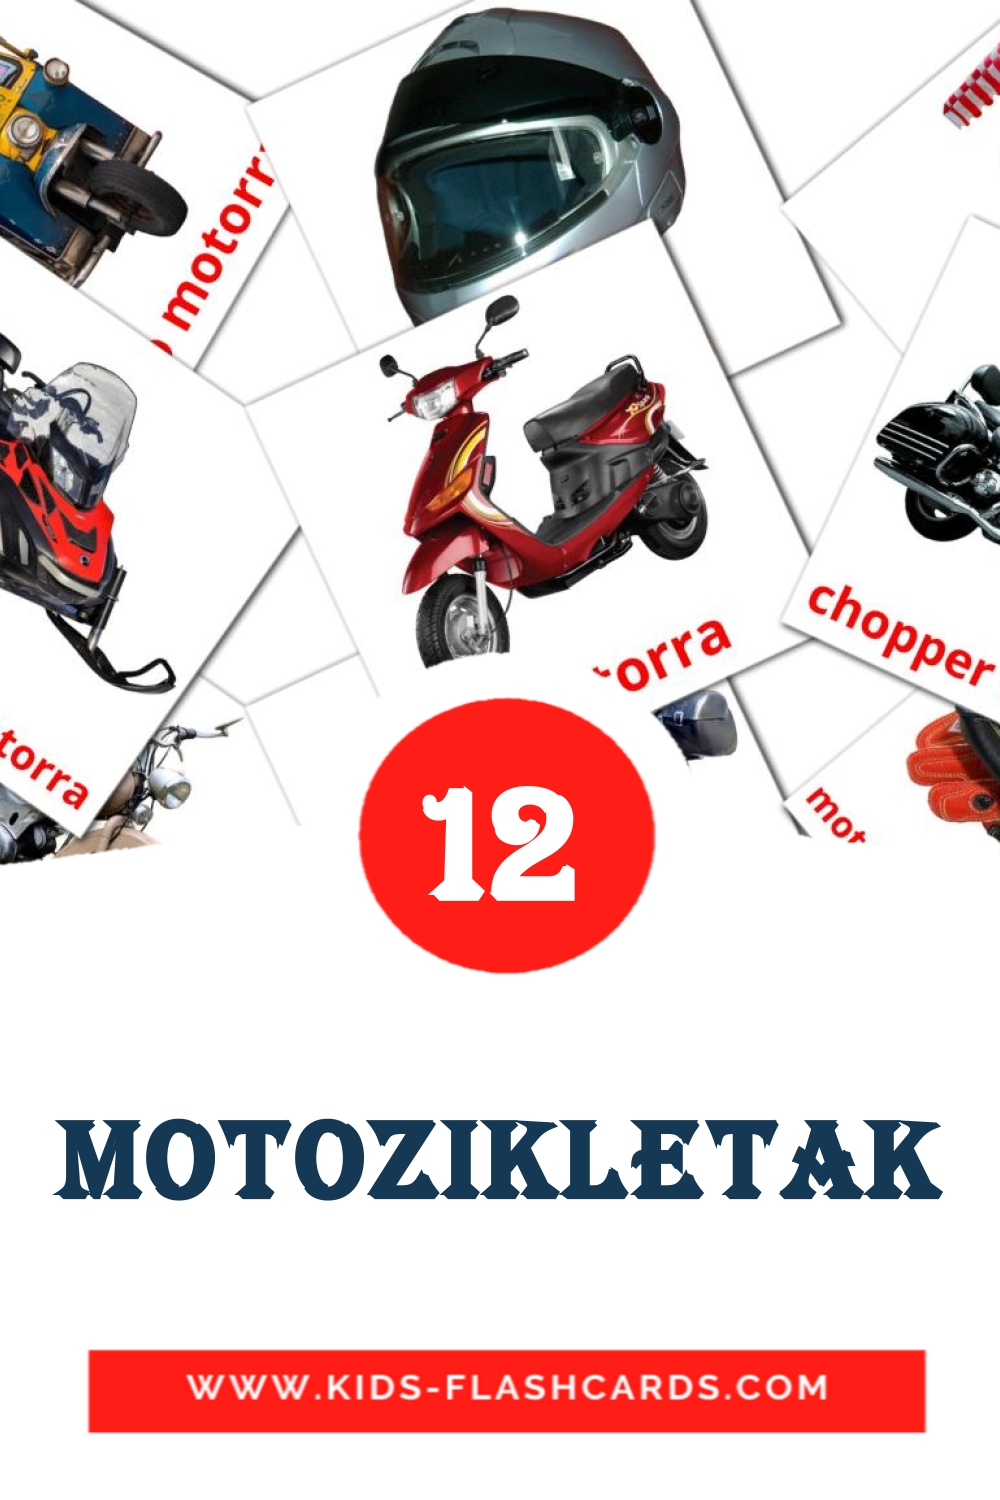 12 Cartões com Imagens de Motozikletak para Jardim de Infância em basco